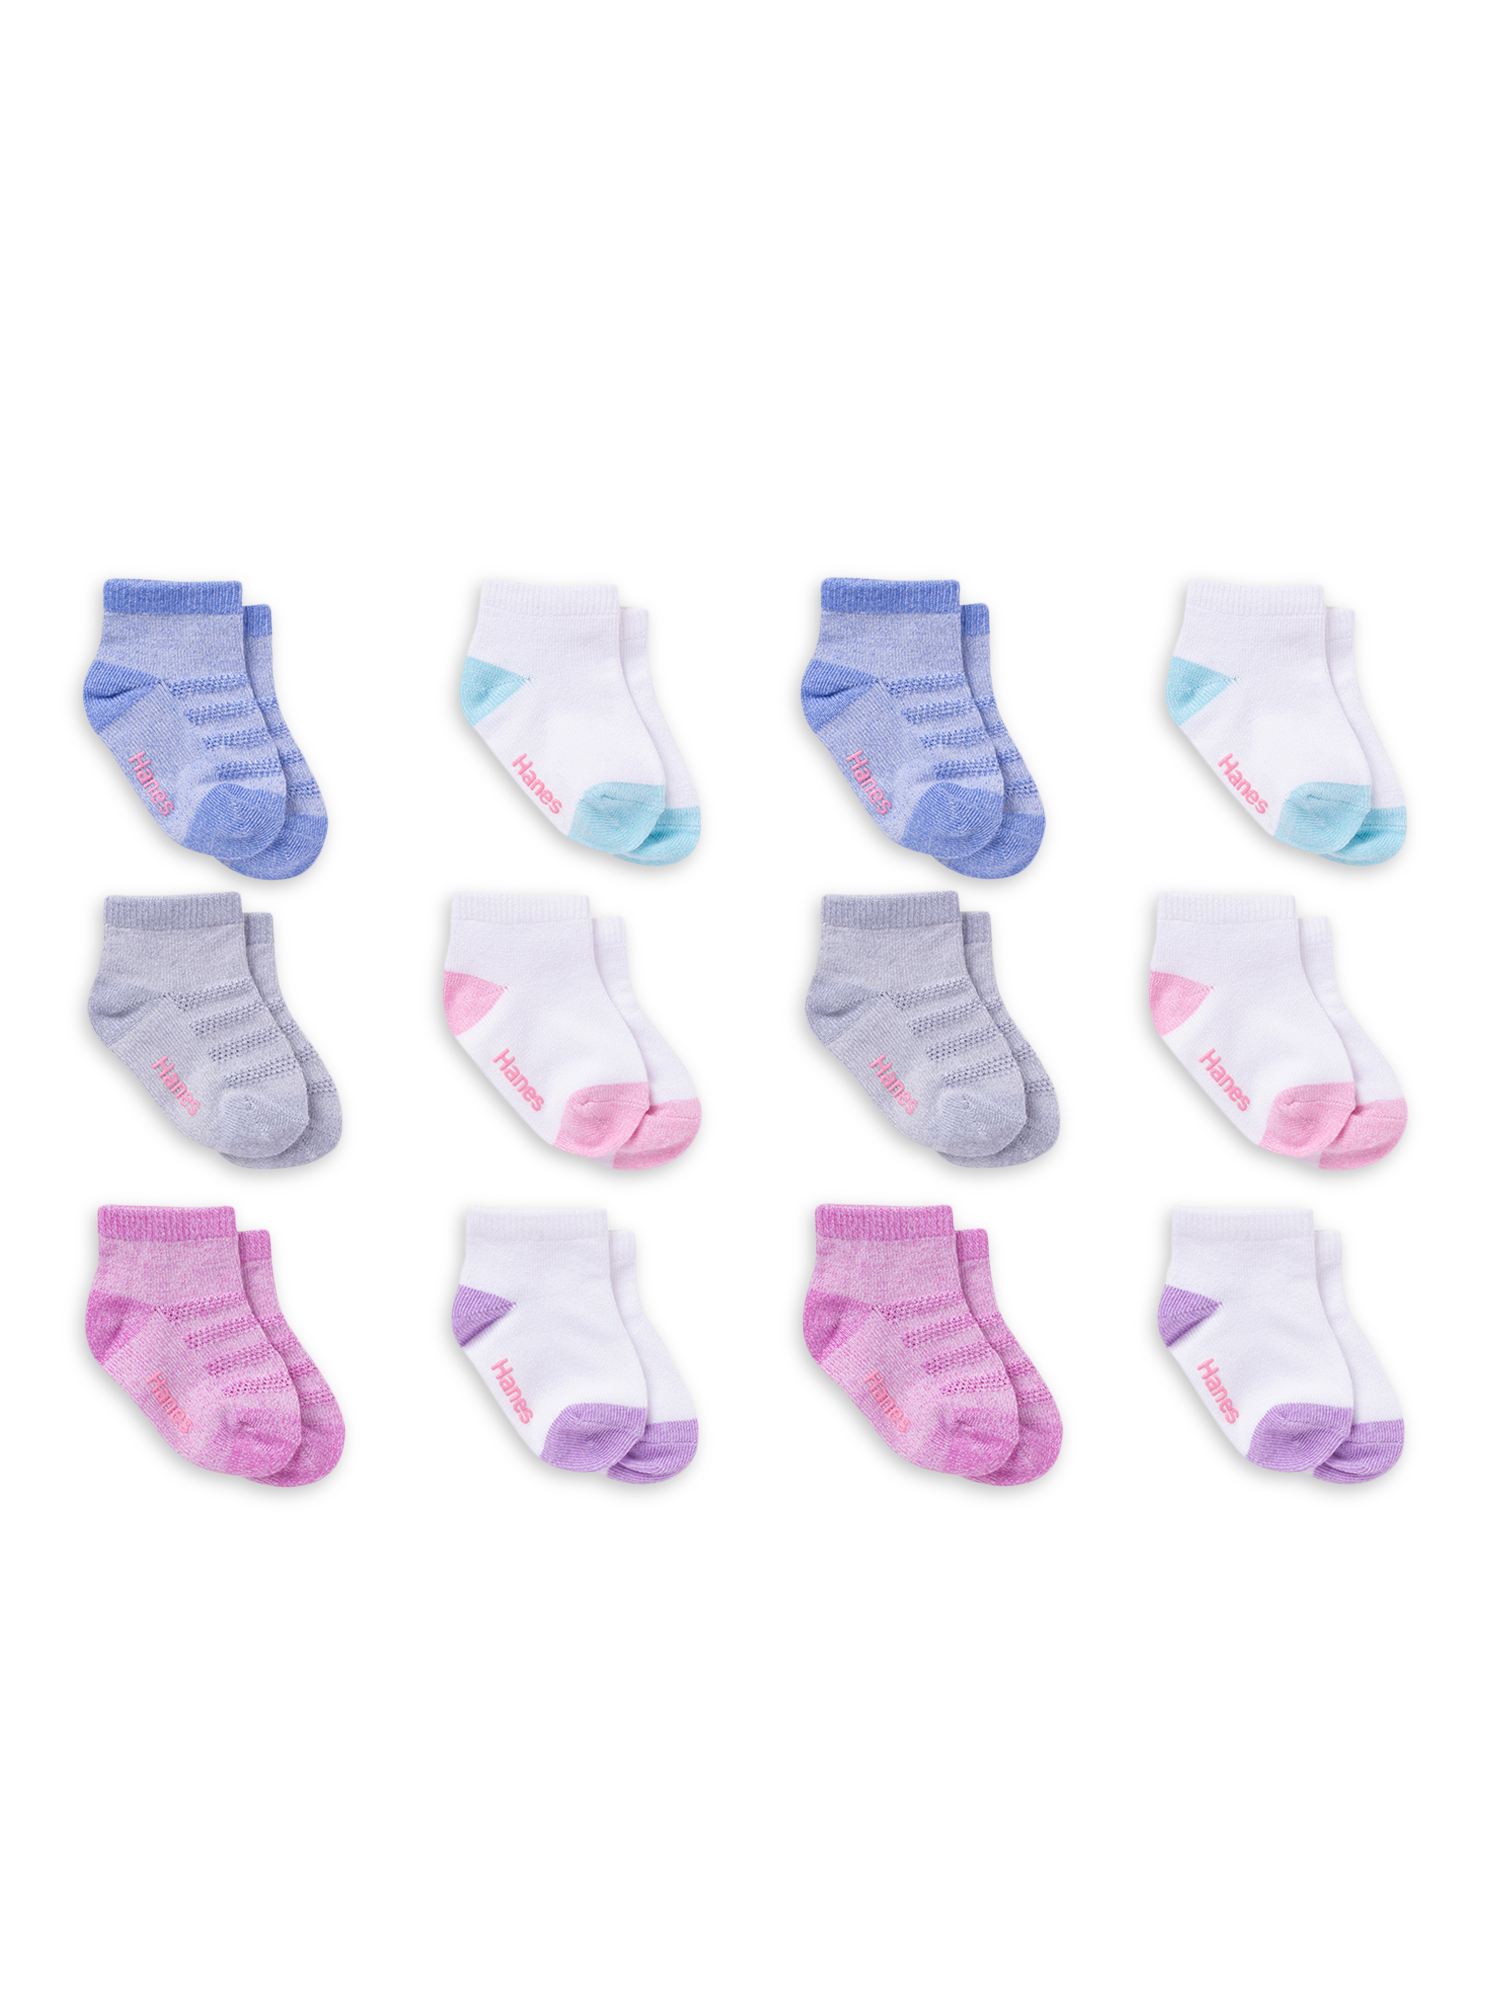 Hanes Toddler Girl Ankle Socks, 12 Pack, Sizes 6M-5T - image 1 of 4